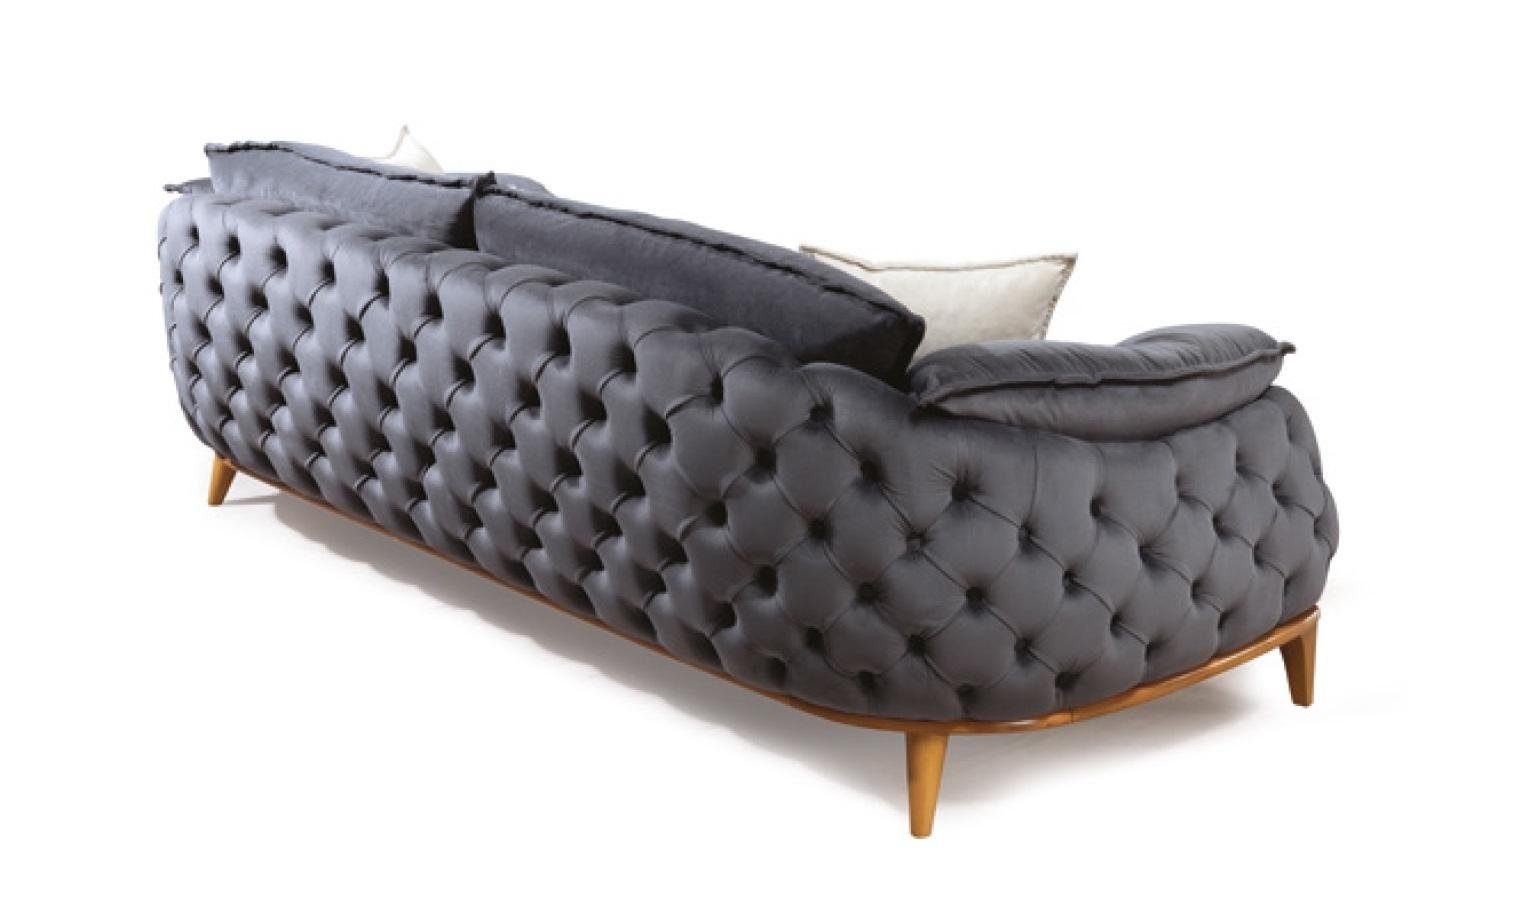 JVmoebel Sofa Grauer Dreisitzer Chesterfield Sofa, Made in Sofas Europe Polster Leder Couch Textil